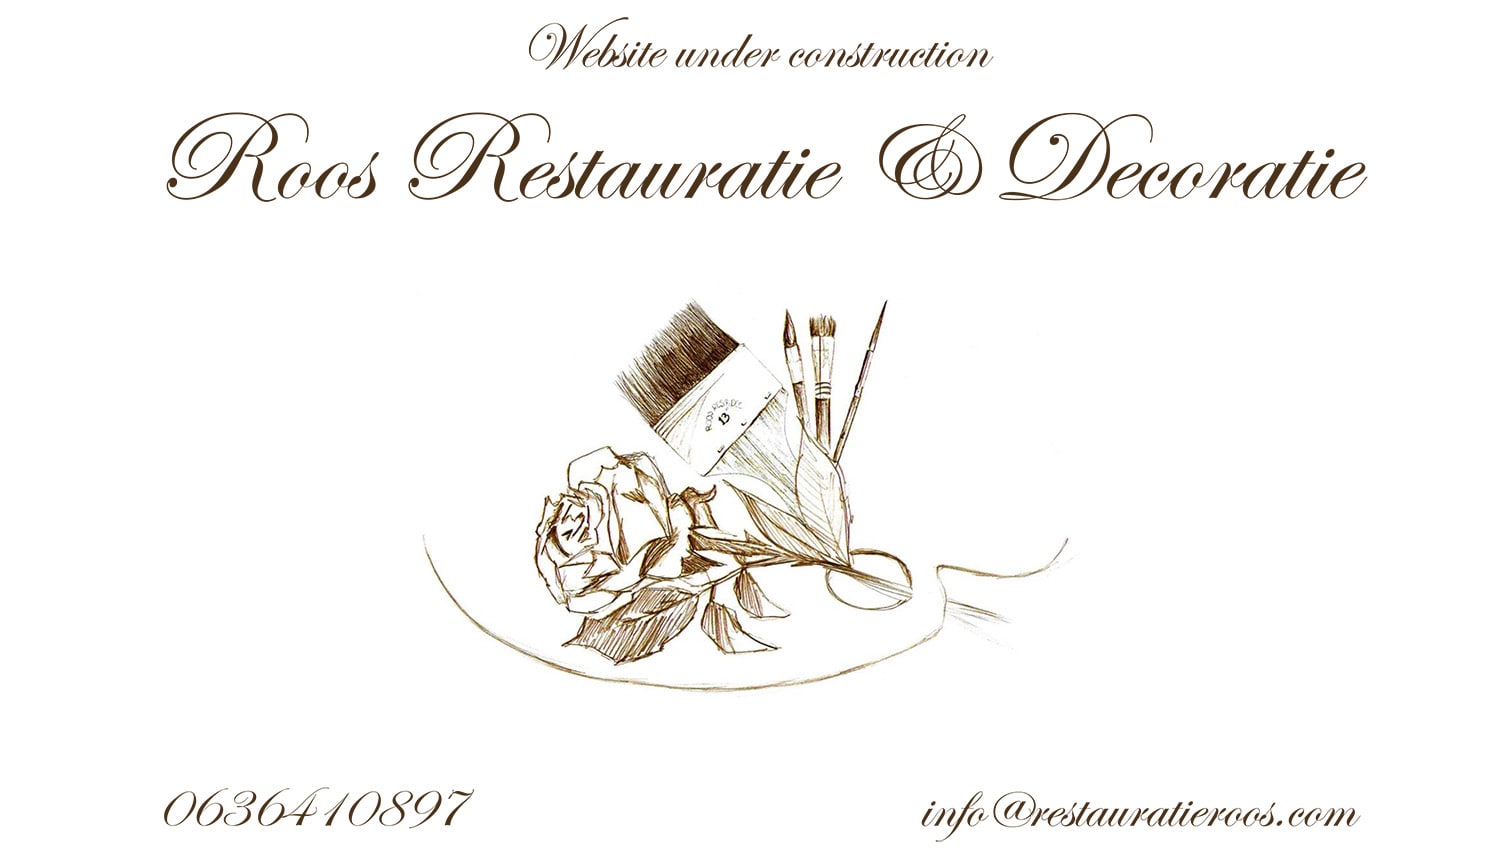 Roos Restauratie & Decoratie